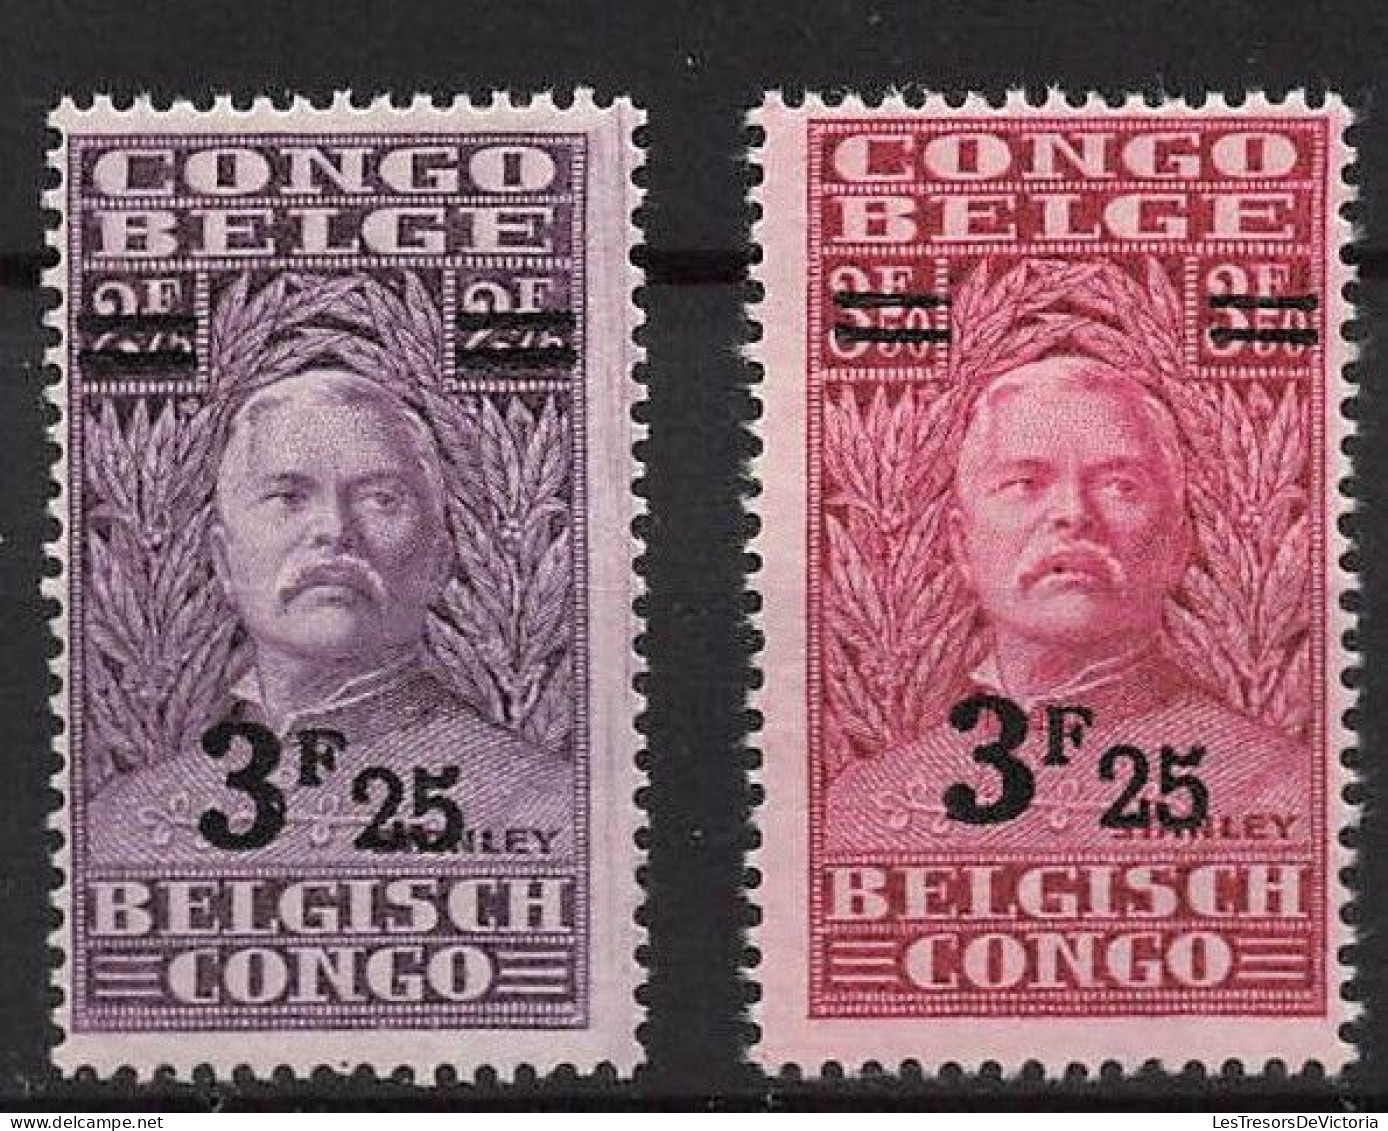 Timbre - Congo Belge - 1931 - COB 162/67* - Stanley - Cote 18 - Ongebruikt